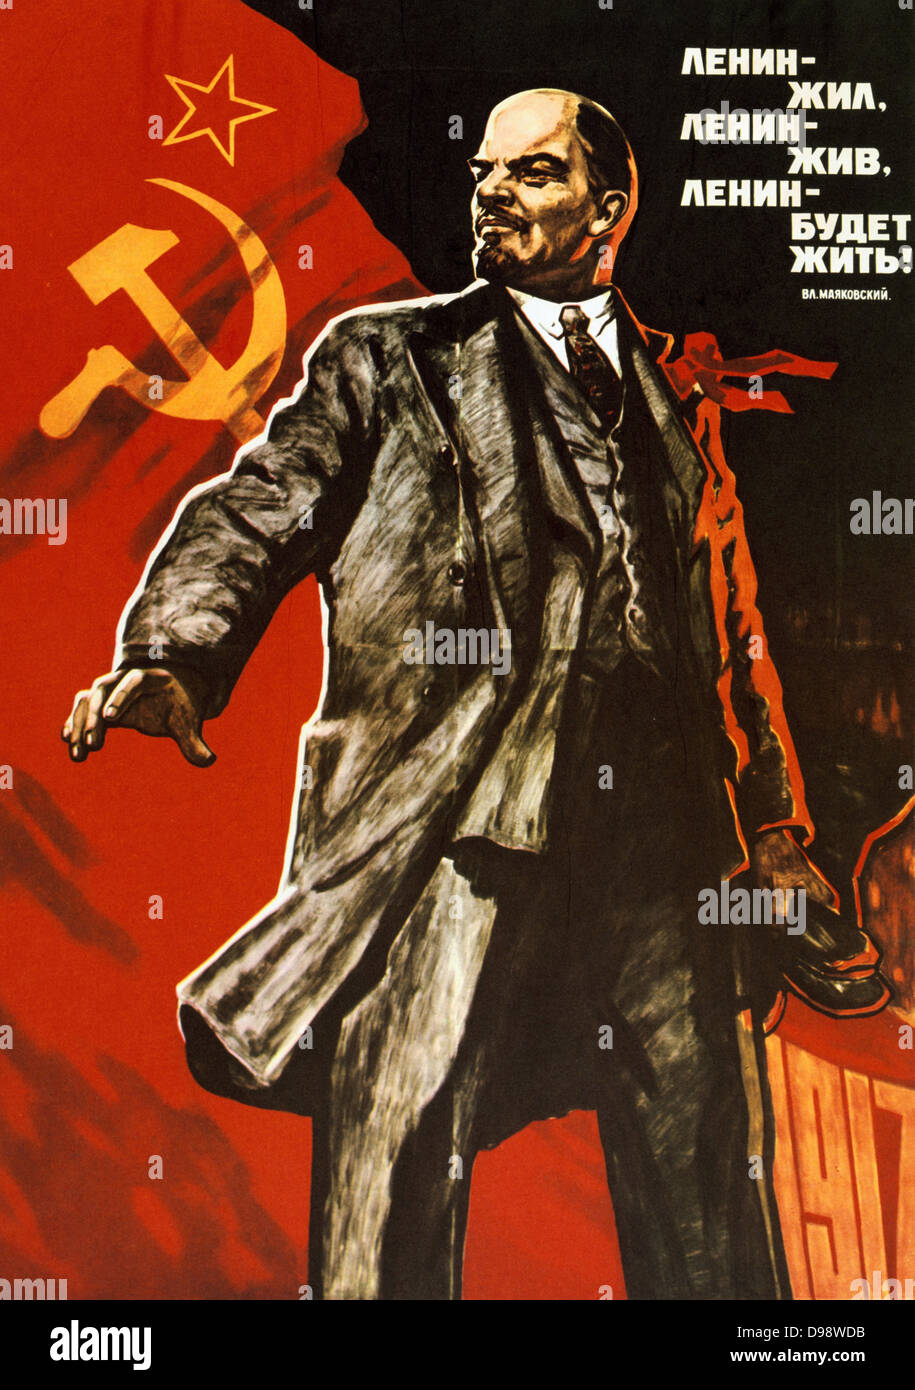 Lenin visse, Lenin vive, evviva Lenin', propaganda sovietica poster da Viktor Ivanov Semenovich. La Russia Sovietica Unione Sovietica comunista comunismo Foto Stock